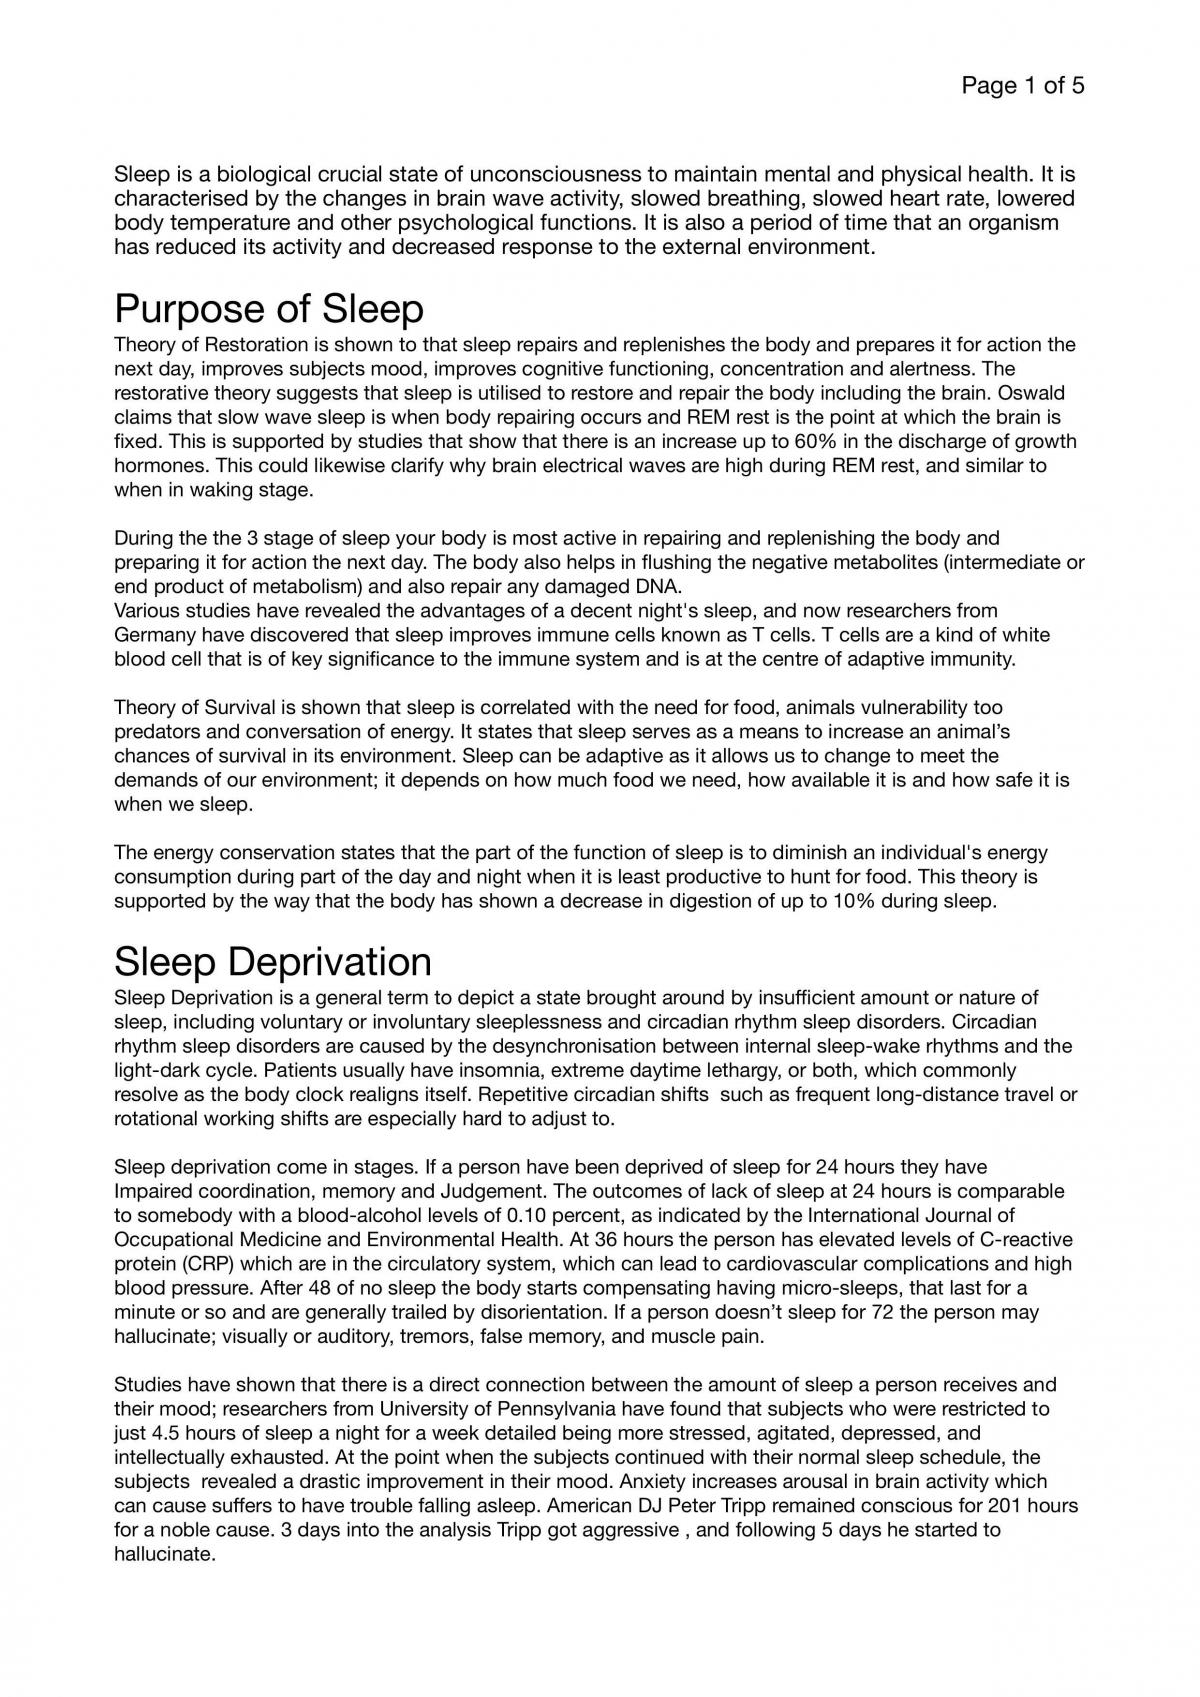 write essay on importance of sleep